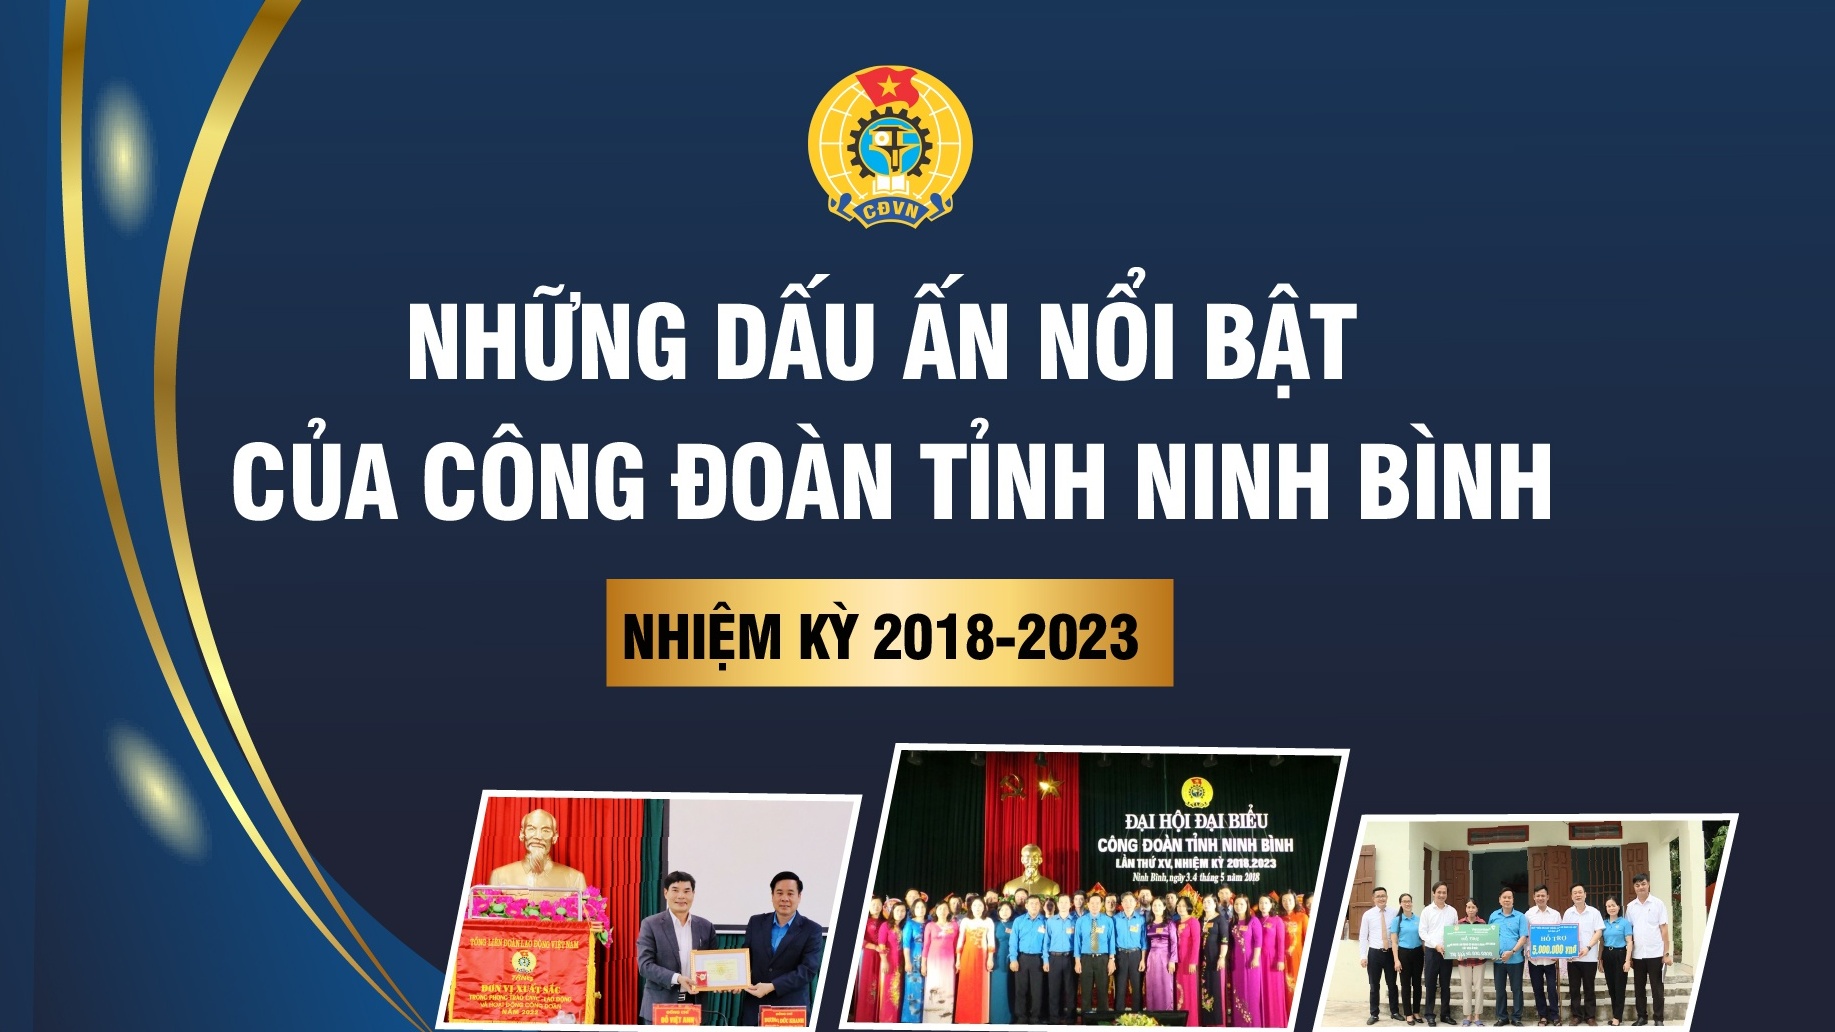 Những dấu ấn nổi bật của Công đoàn tỉnh Ninh Bình nhiệm kỳ 2018-2023